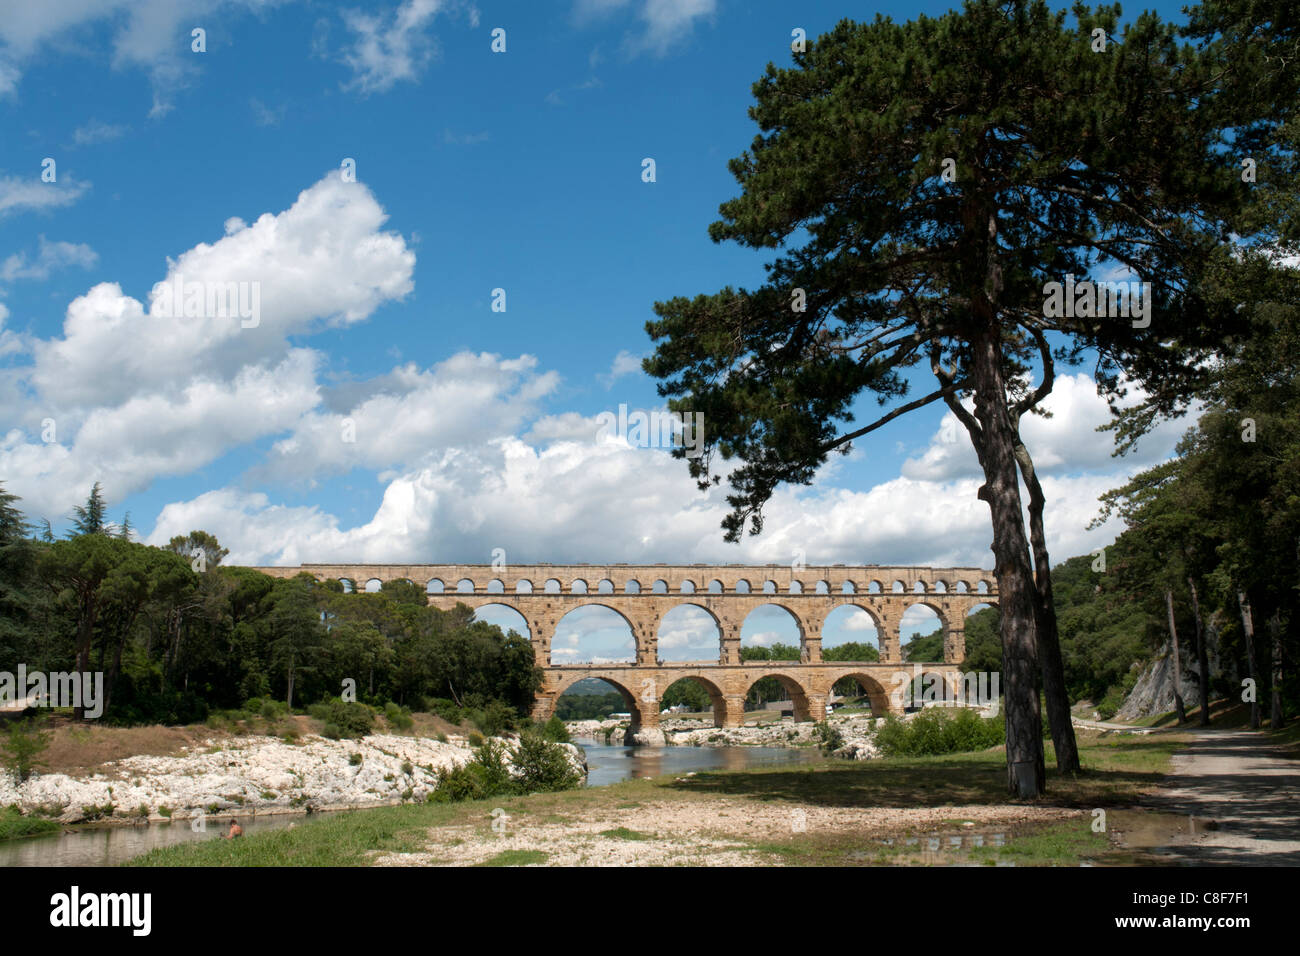 Frankreich, Gard, Languedoc-Roussillion, Pont du Gard, römische Aquädukt, Brücke, die Pont du Gard, Architektur, Brücken, Ort der Intere Stockfoto